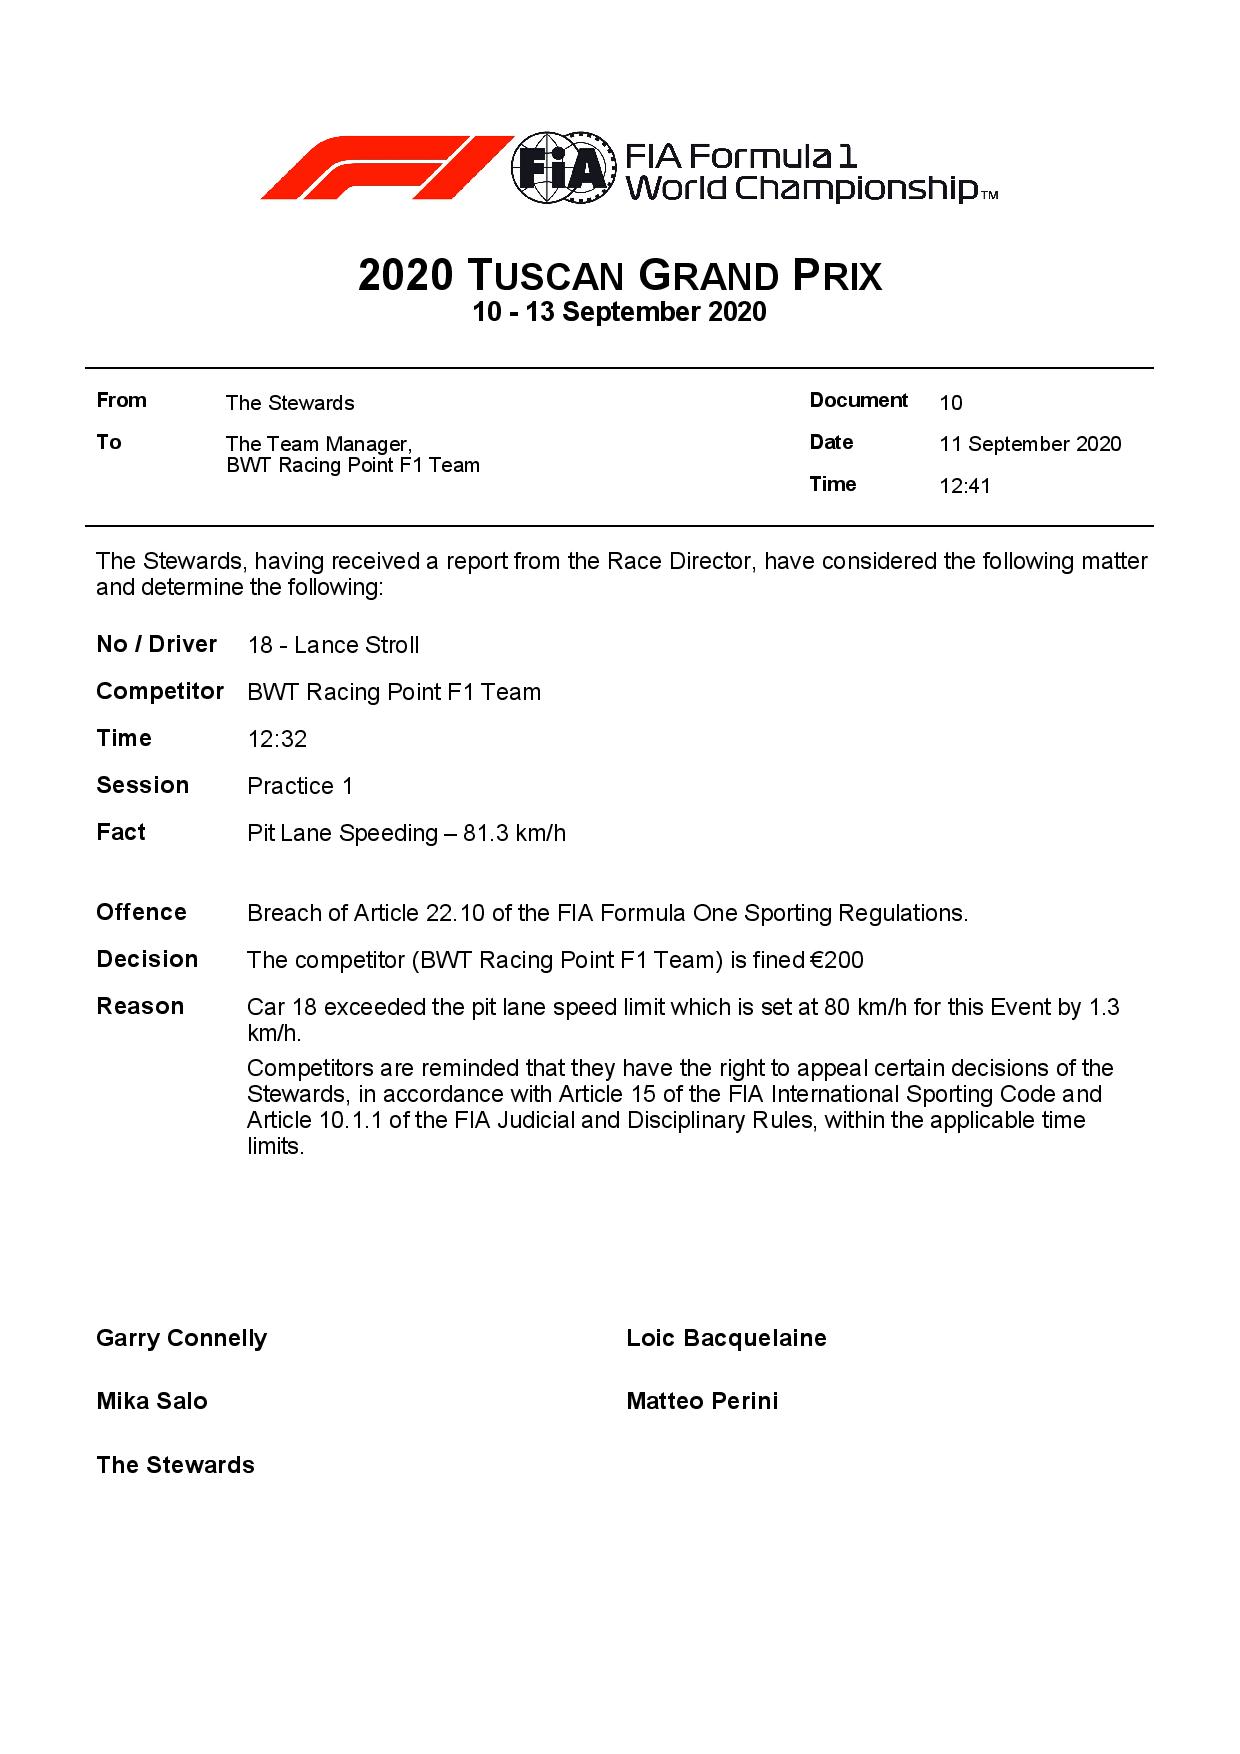 F1 - Officiel : L'équipe Racing Point à l'amende au GP de Toscane